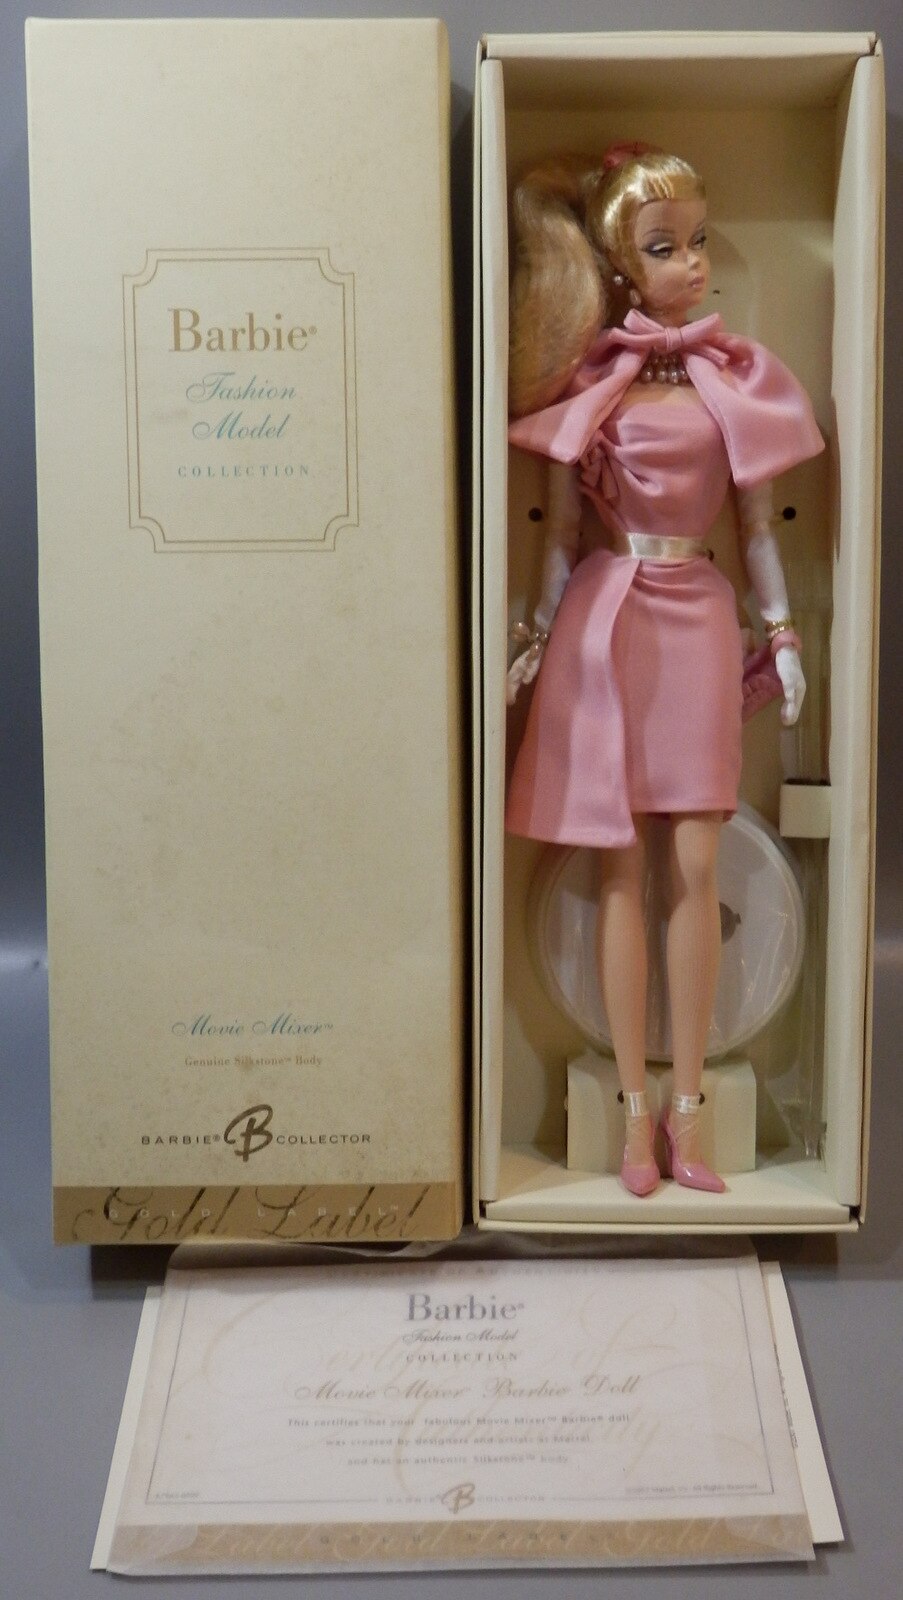 Barbie バービー ムービーミキサー 本体のみ - おもちゃ/人形